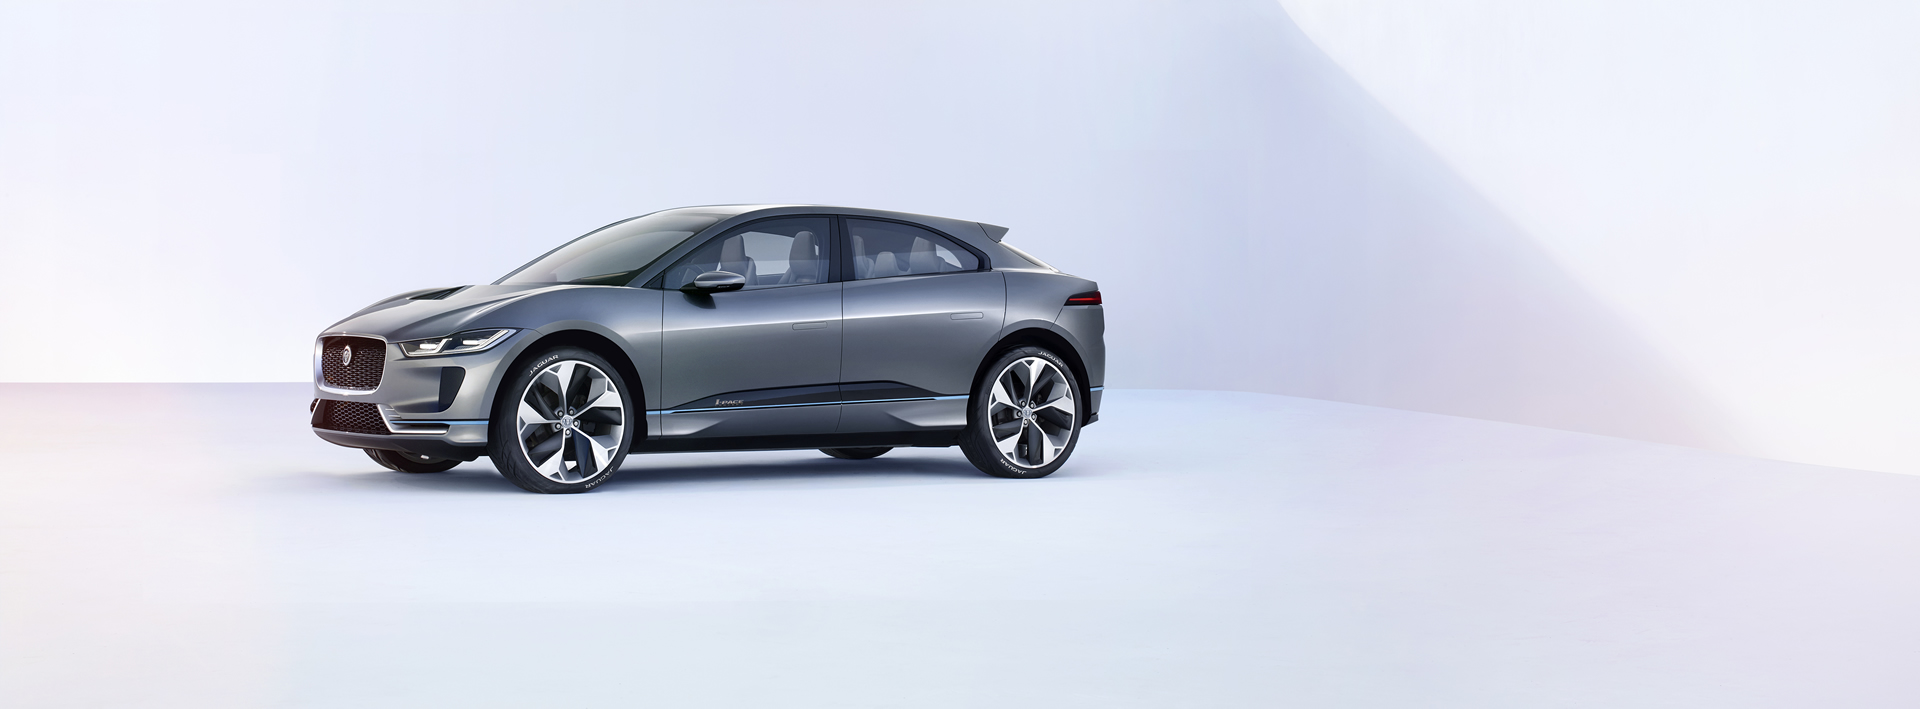 EV’s are Going Mainstream: Jaguar I-Pace SUV Concept